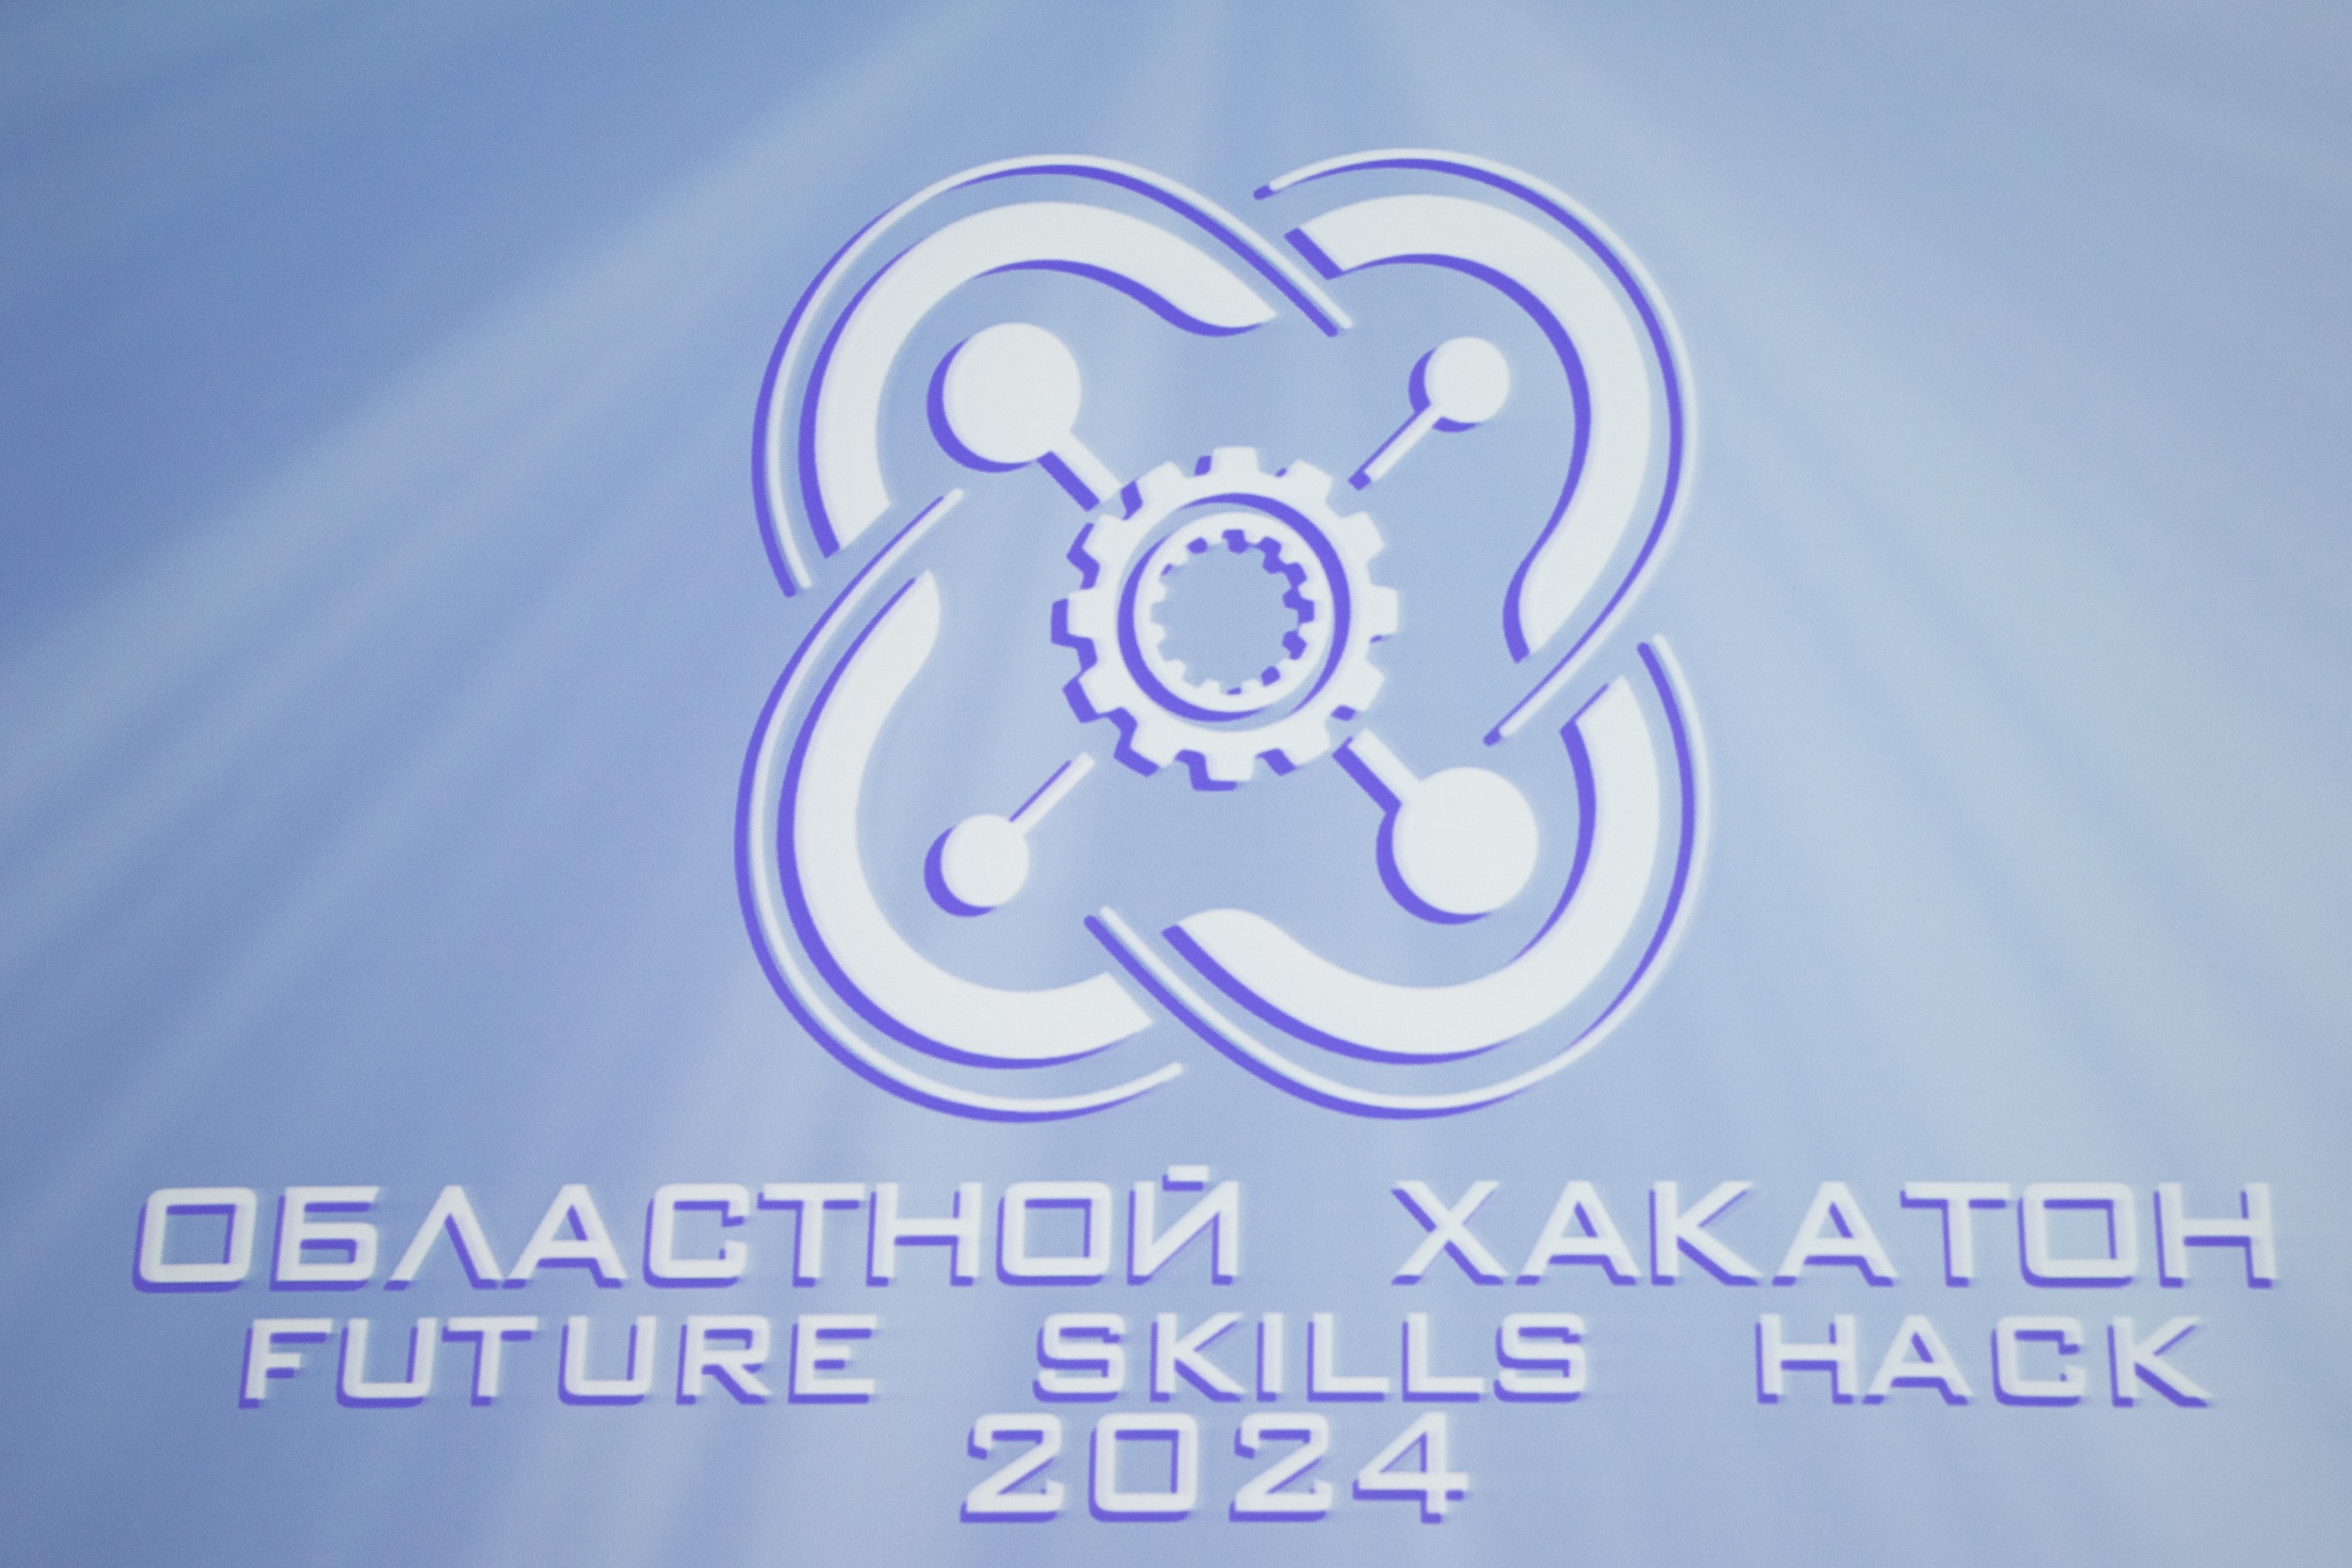 Хакатон FutureSkillsHack 2024.